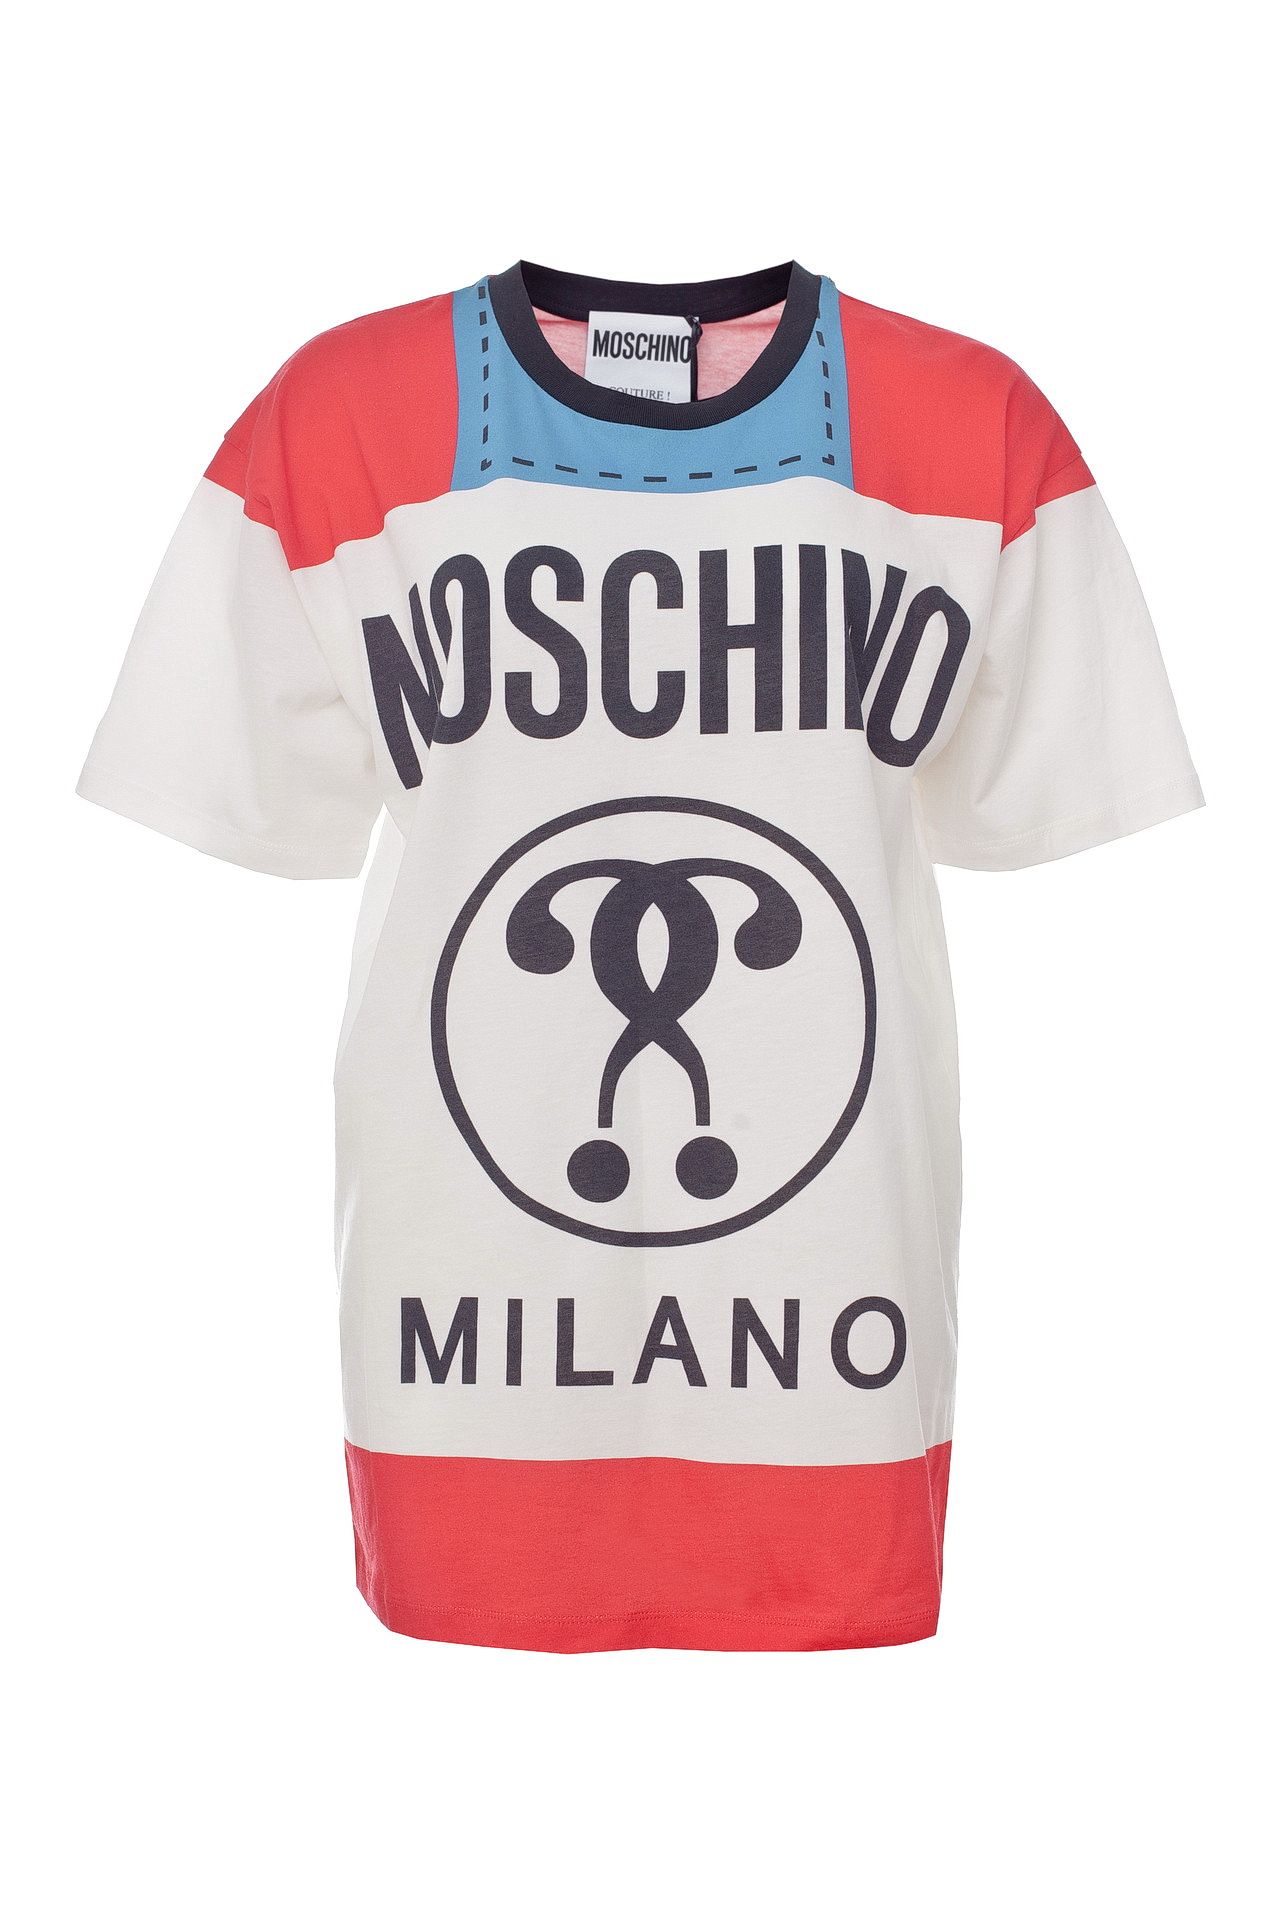 Одежда женская Футболка MOSCHINO (3XT07019140/18.1). Купить за 12900 руб.